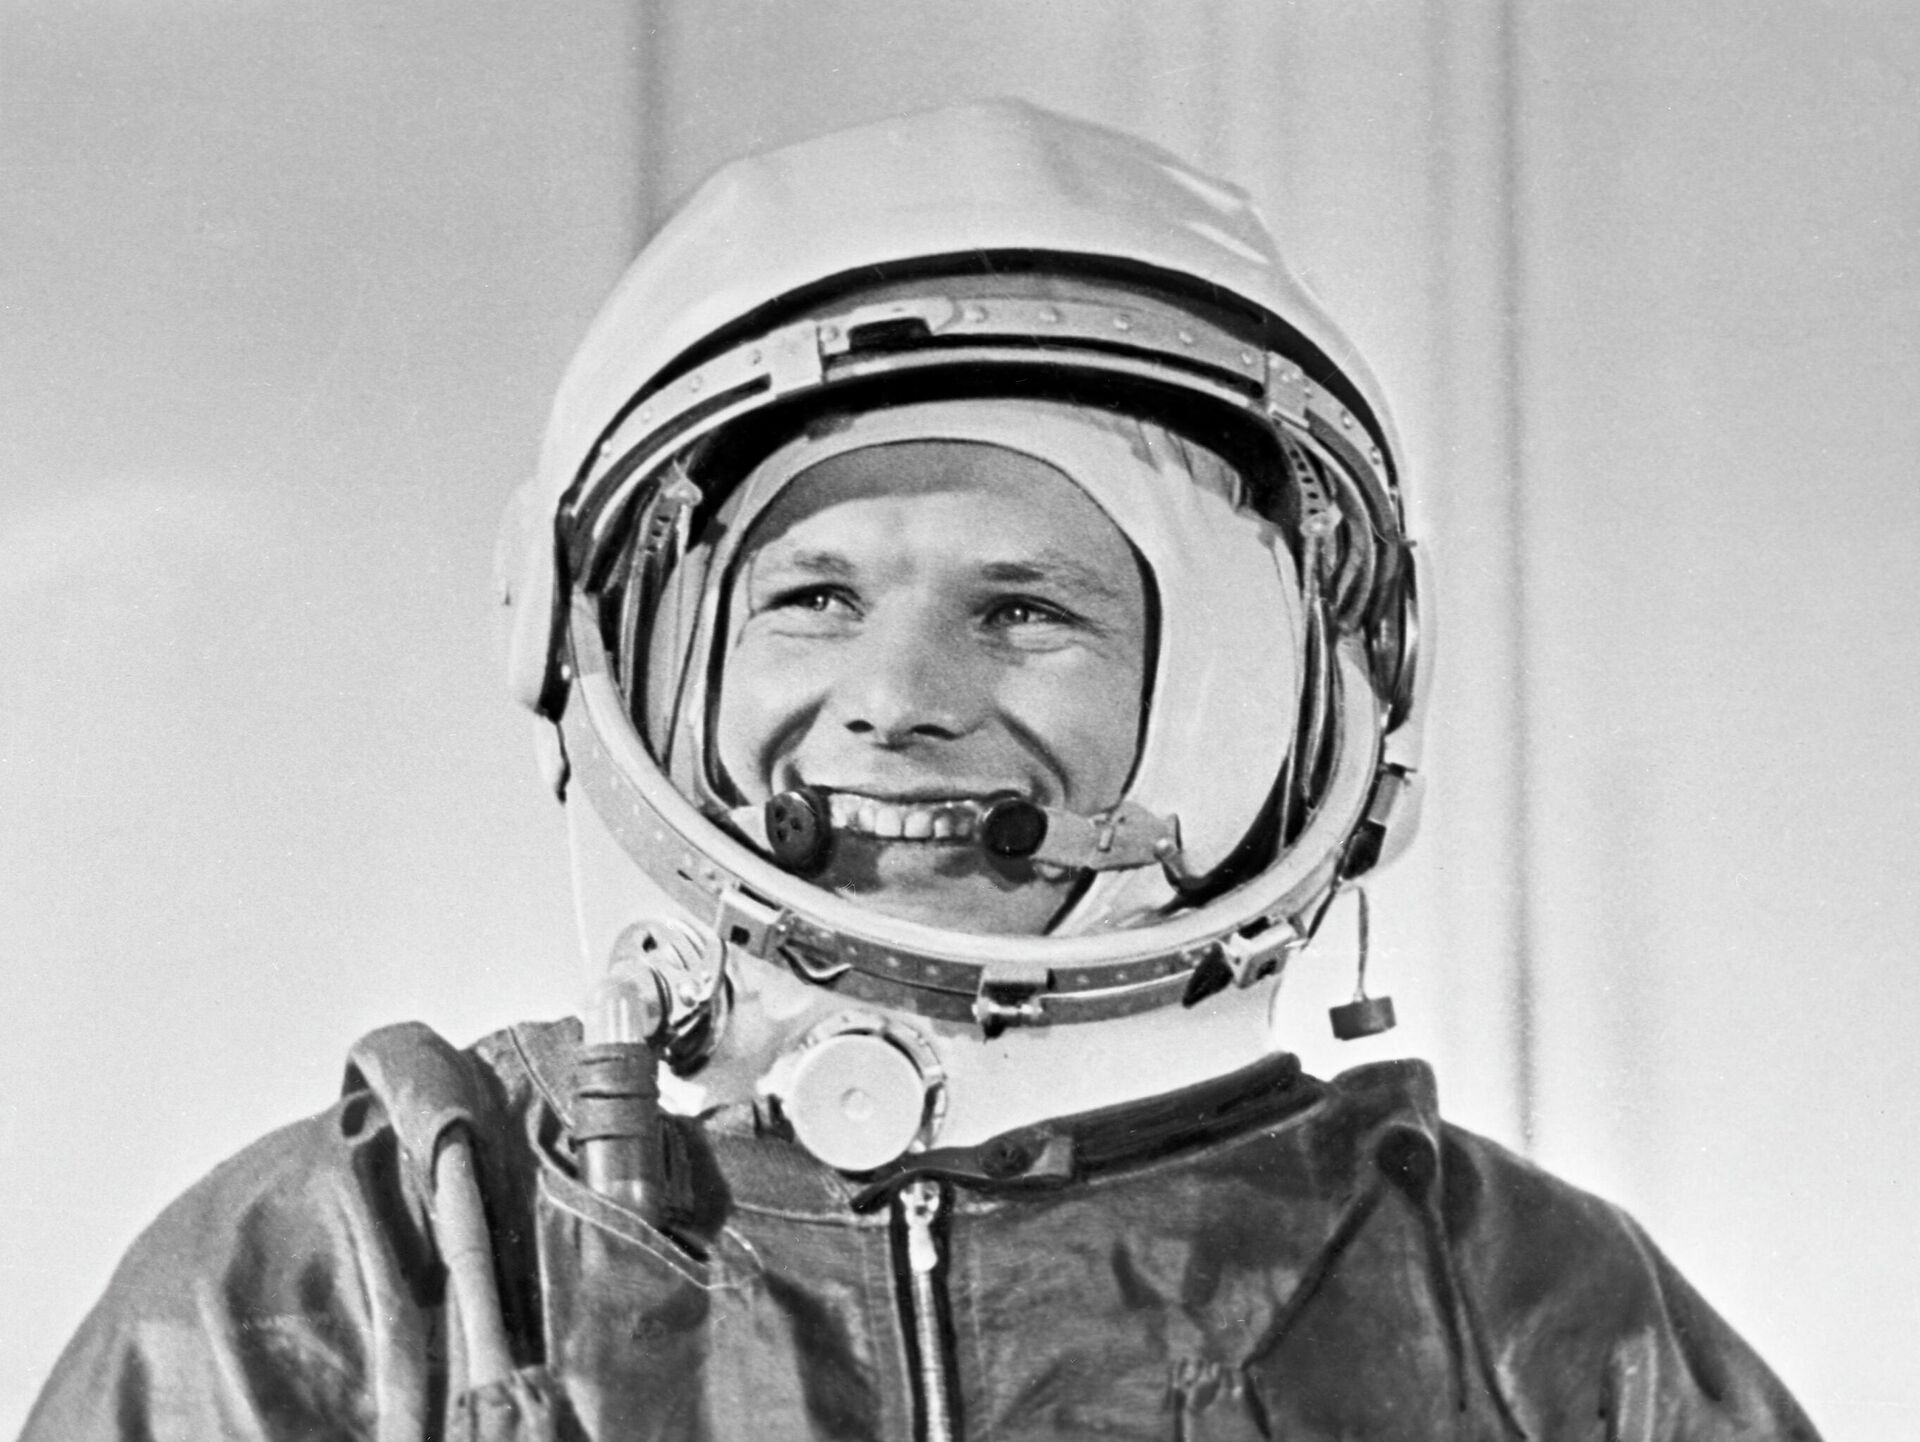 El cosmonauta soviético Yuri Gagarin con su traje espacial antes del histórico lanzamiento de la nave espacial Vostok-1 desde el cosmódromo de Baikonur el 12 de abril de 1961 - Sputnik Mundo, 1920, 13.04.2021